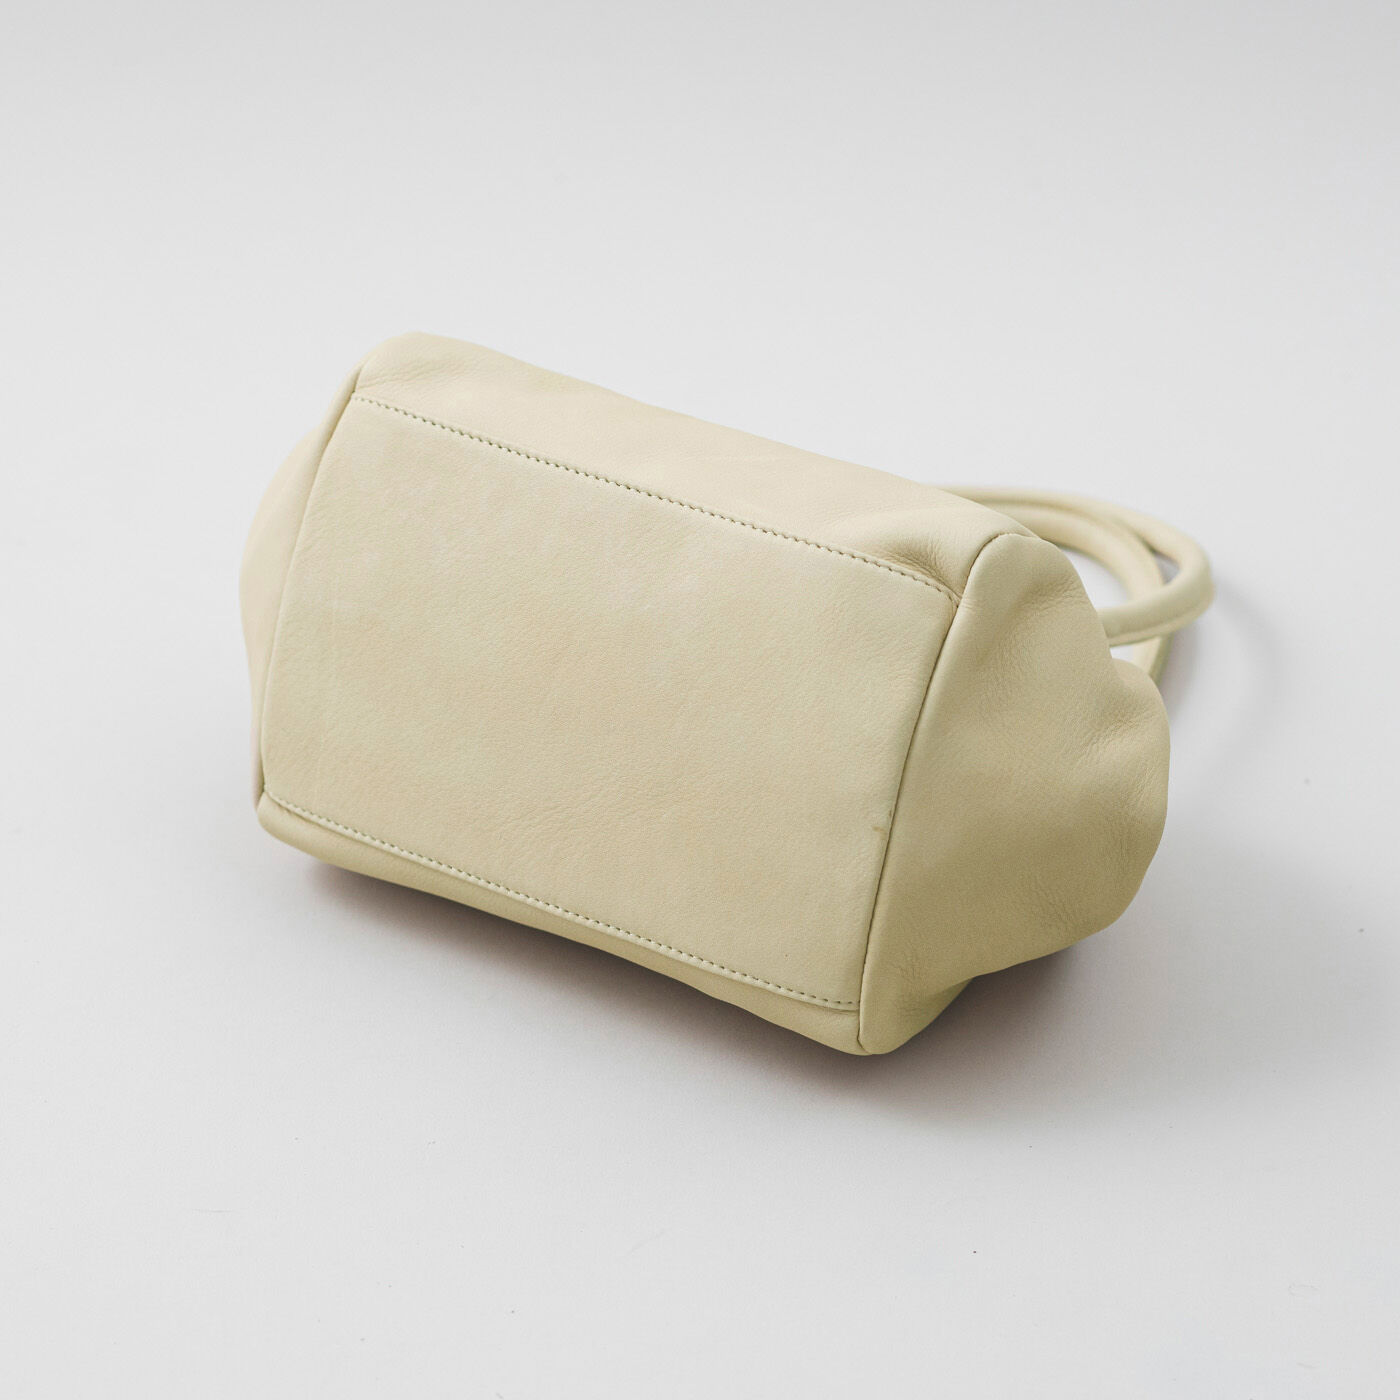 ＆Stories|鞄デザイナーとプランナー山猫が作った 職人本革のテタールバッグ〈メレンゲ色〉|底面にもまちをしっかり付けました。